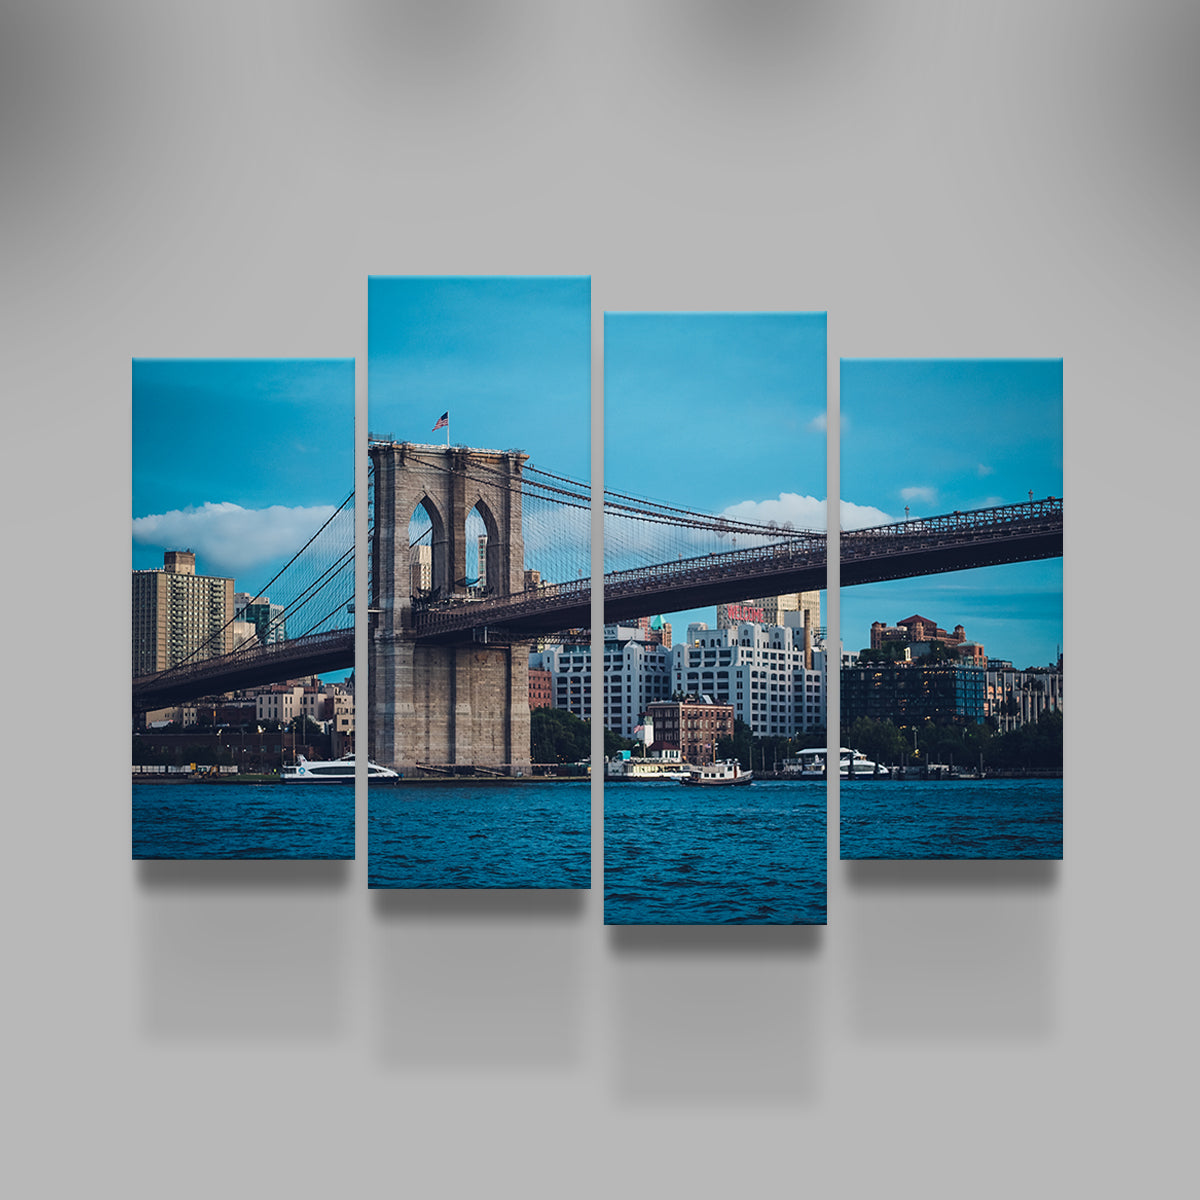 Brooklyn Bridge Blue Hour